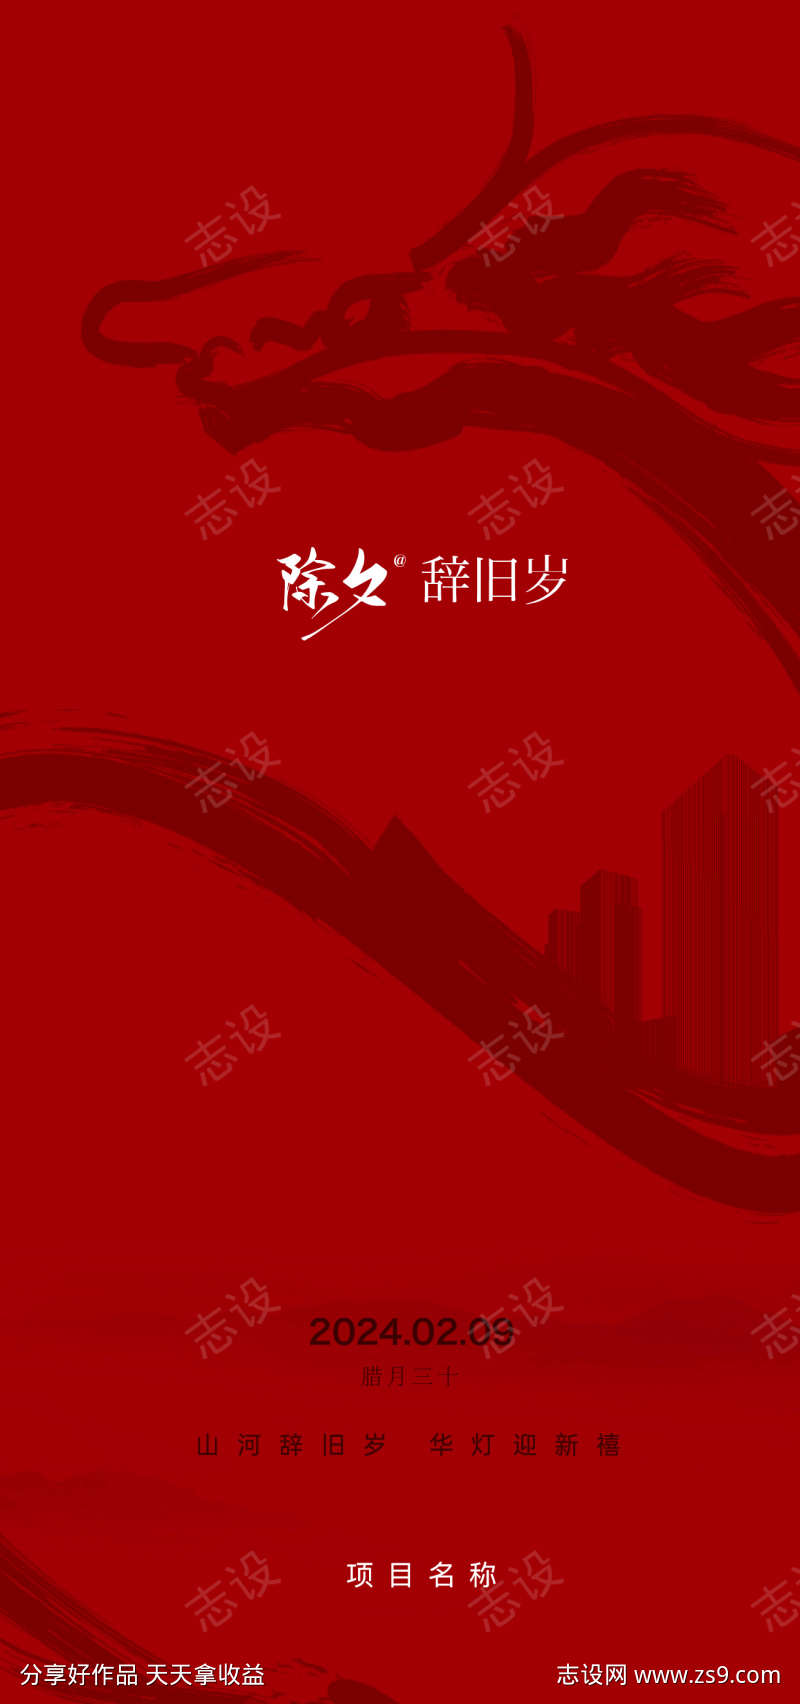 龙年除夕喜气新年快乐春节节日节气红色灯笼